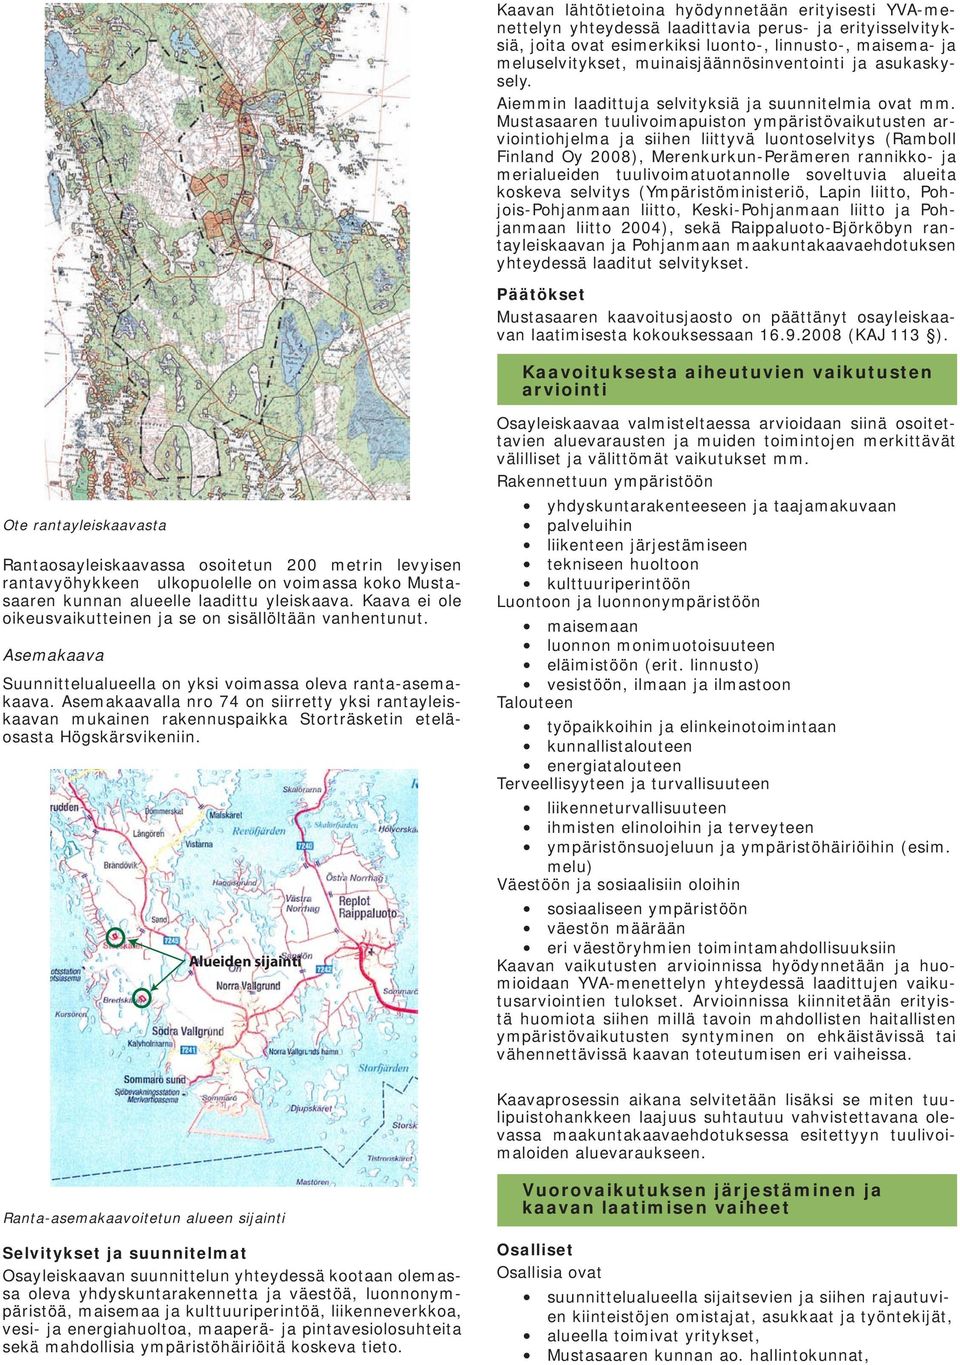 Mustasaaren tuulivoimapuiston ympäristövaikutusten arviointiohjelma ja siihen liittyvä luontoselvitys (Ramboll Finland Oy 2008), Merenkurkun-Perämeren rannikko- ja merialueiden tuulivoimatuotannolle